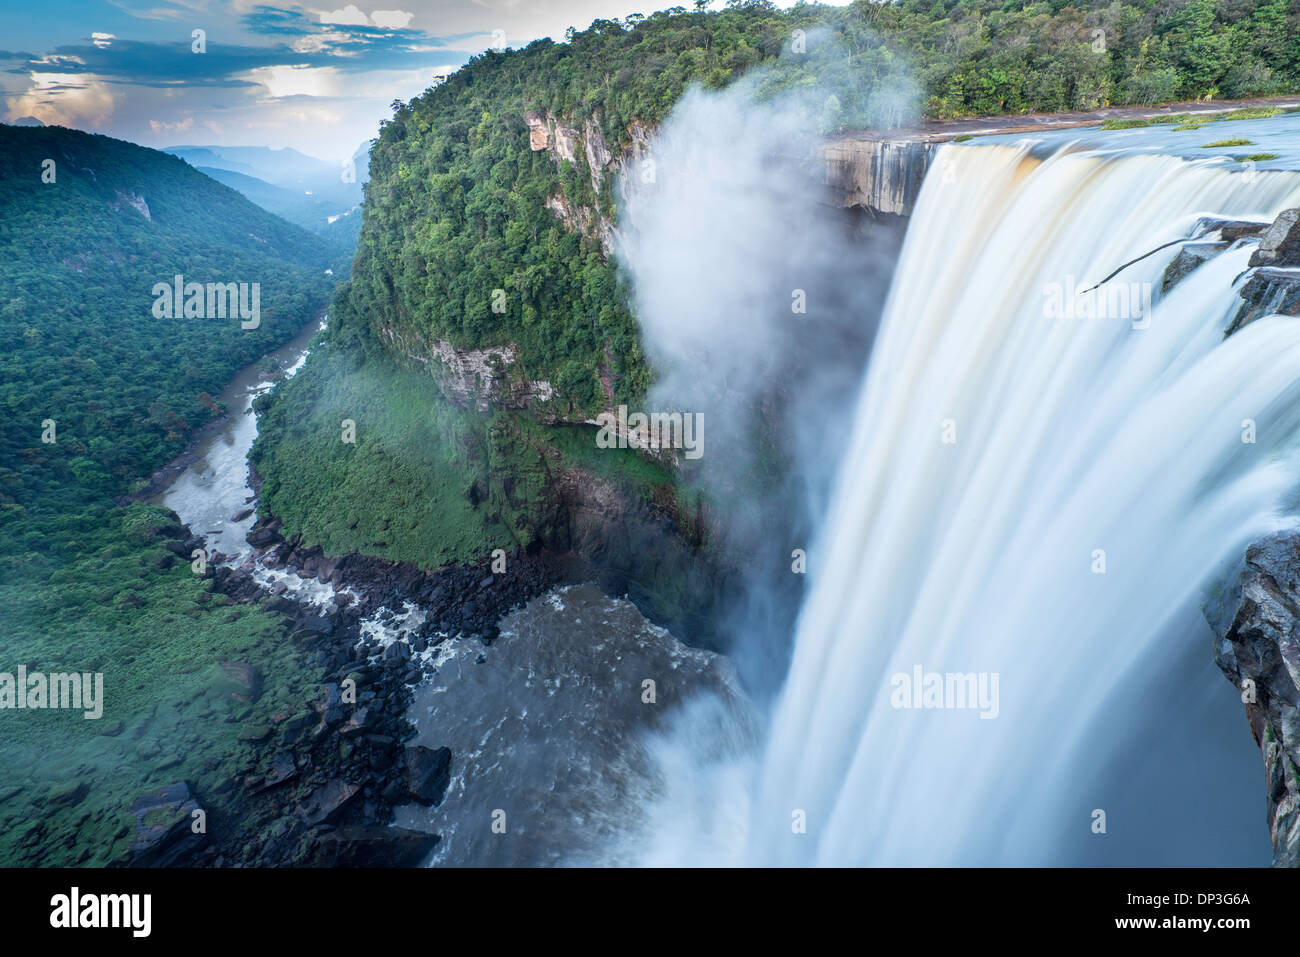 Las cataratas de Kaieteur, el Parque Nacional de Kaieteur, Guyana, Río de patata, combina el enorme volumen de agua con 822 caída del pie Foto de stock